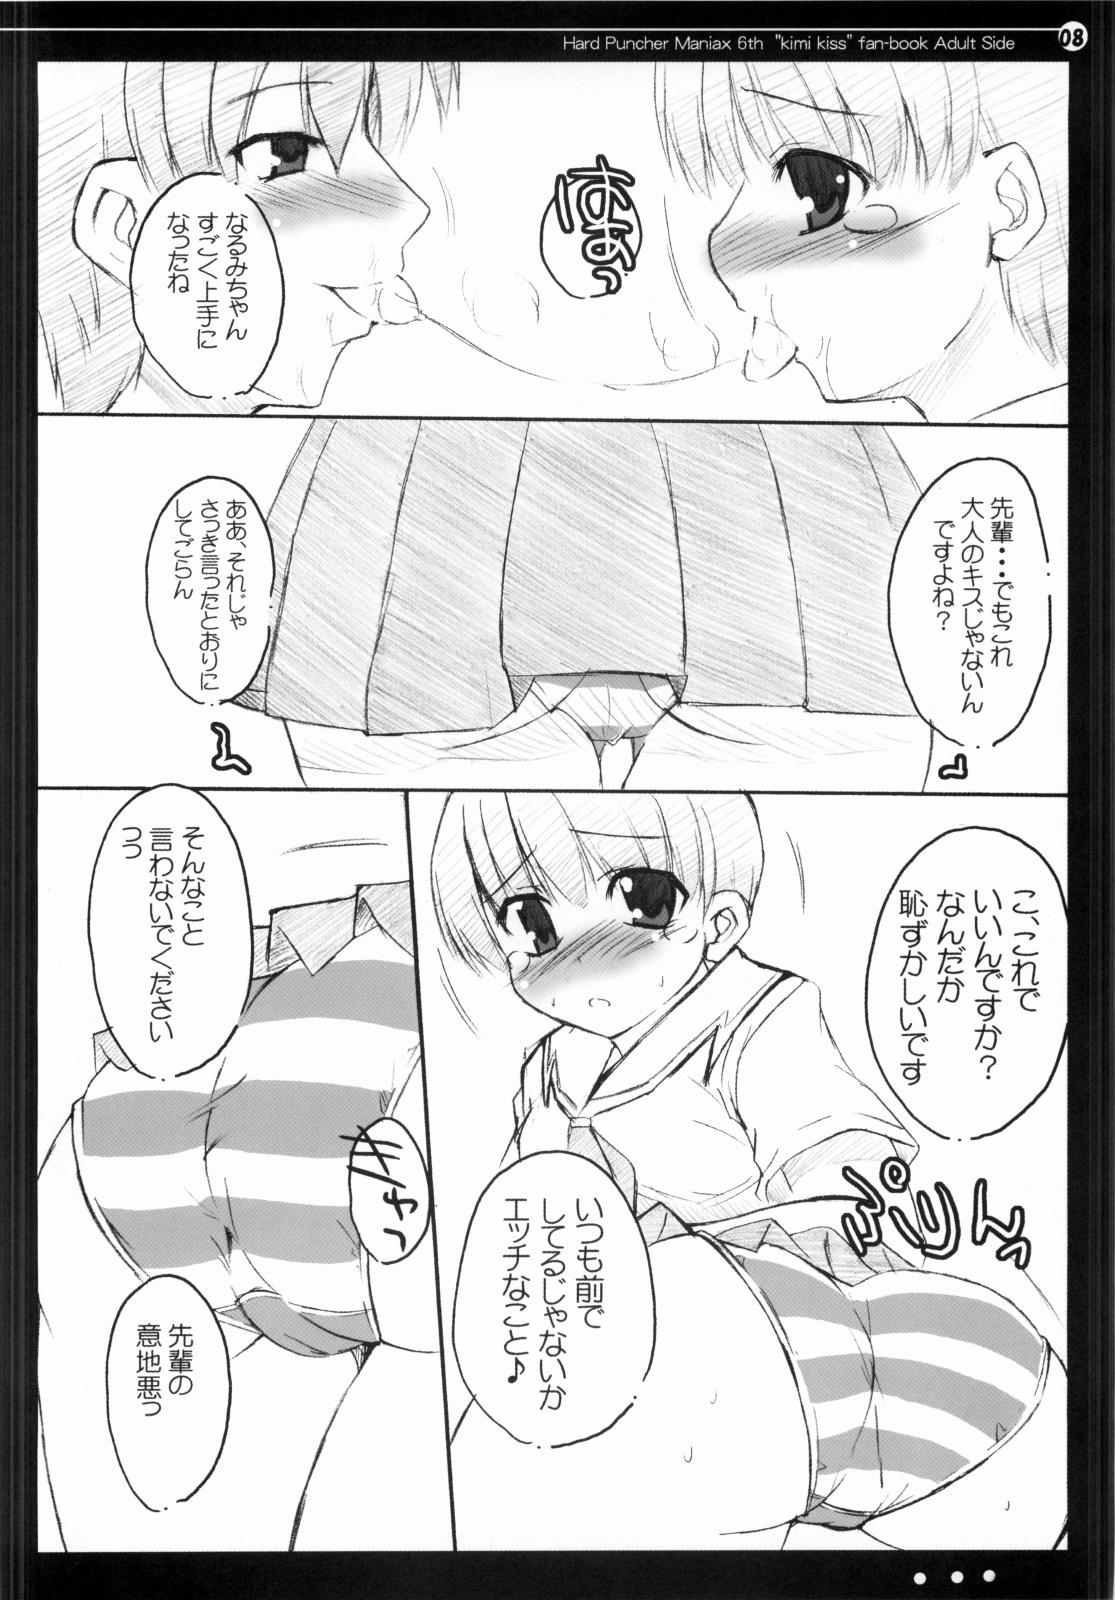 Lady Nana to Narumi no Motto Kisu Shite!! - Kimikiss Animation - Page 7